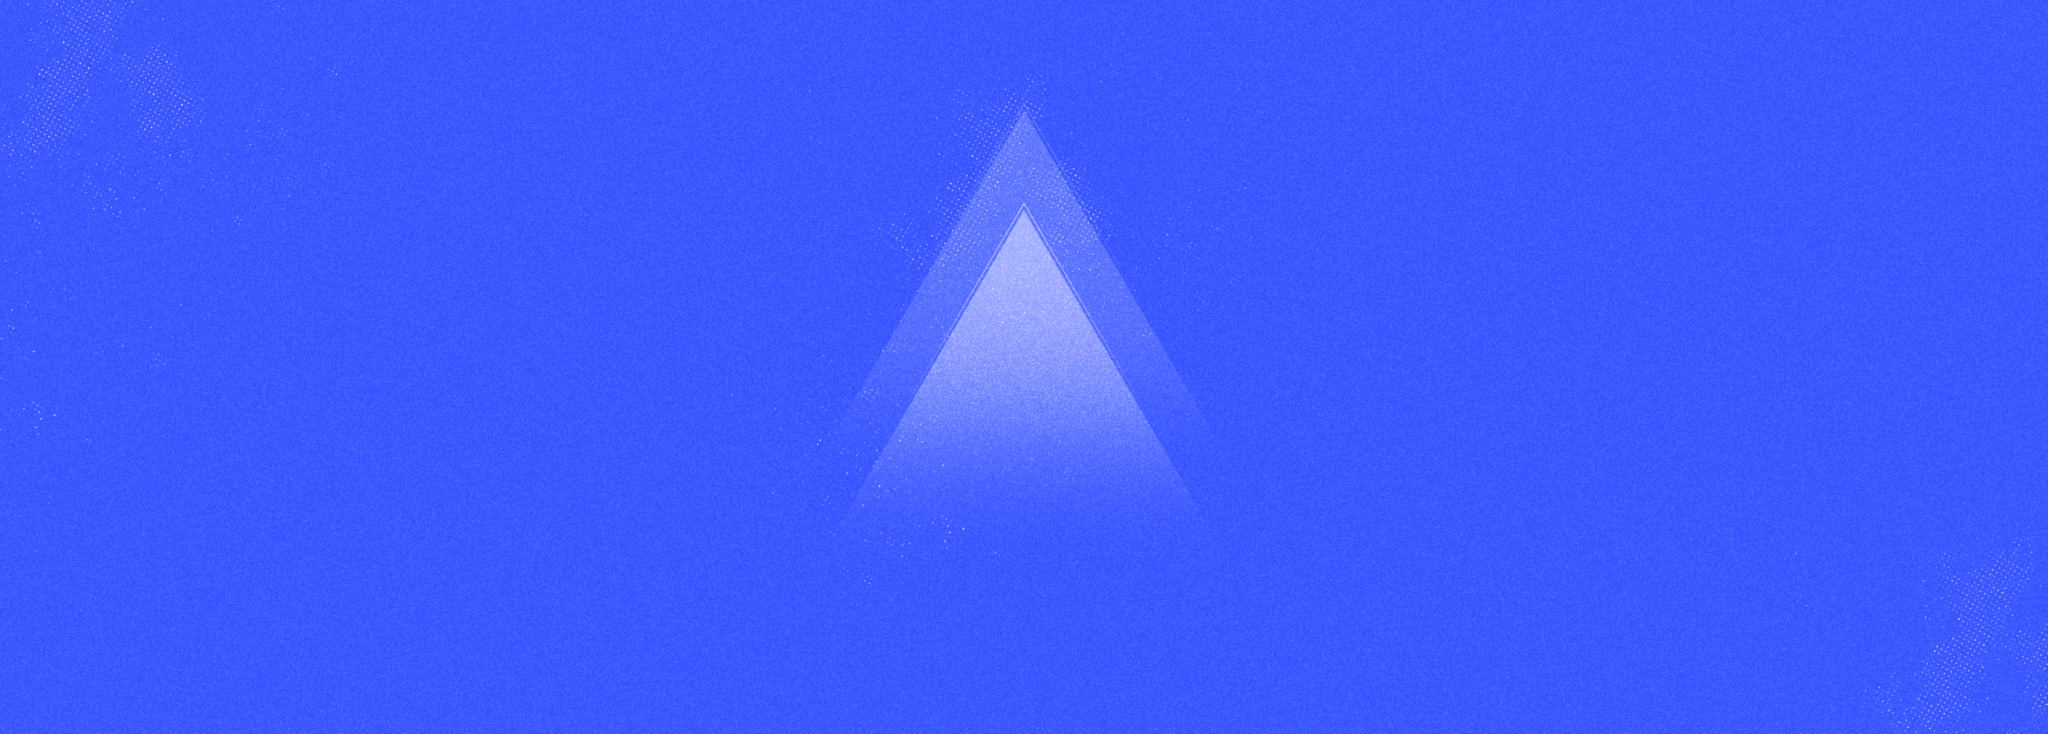 Kuvassa on sinisellä taustalla valkoisia läpikuultavia kolmioita.